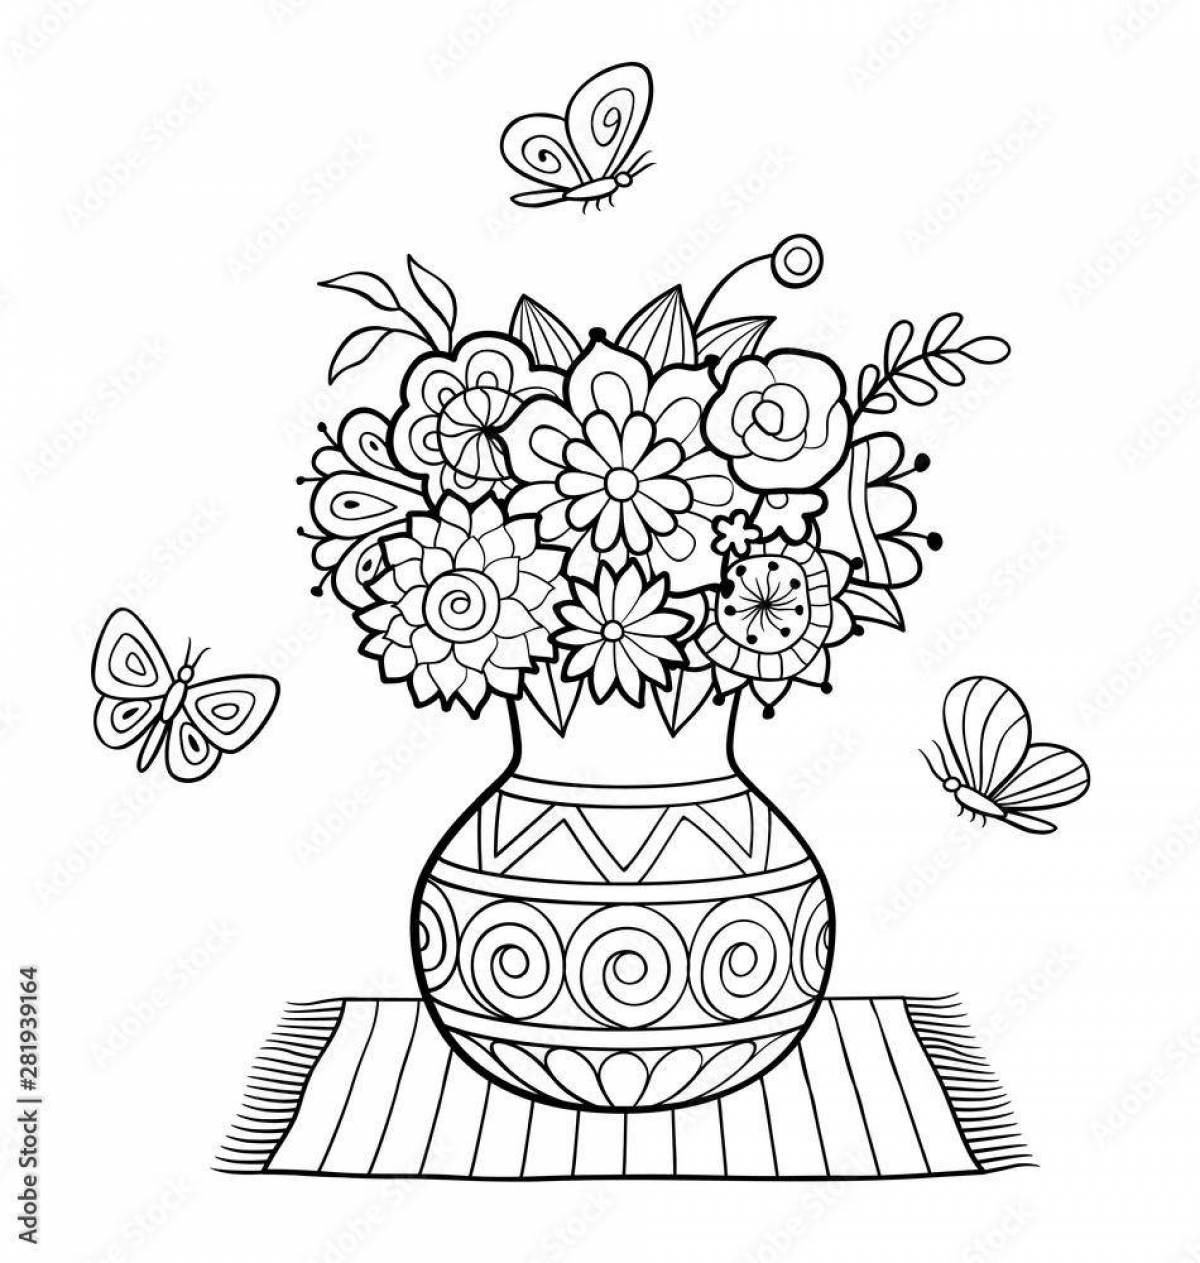 Сказочная ваза с цветами раскраска для детей 5-6 лет